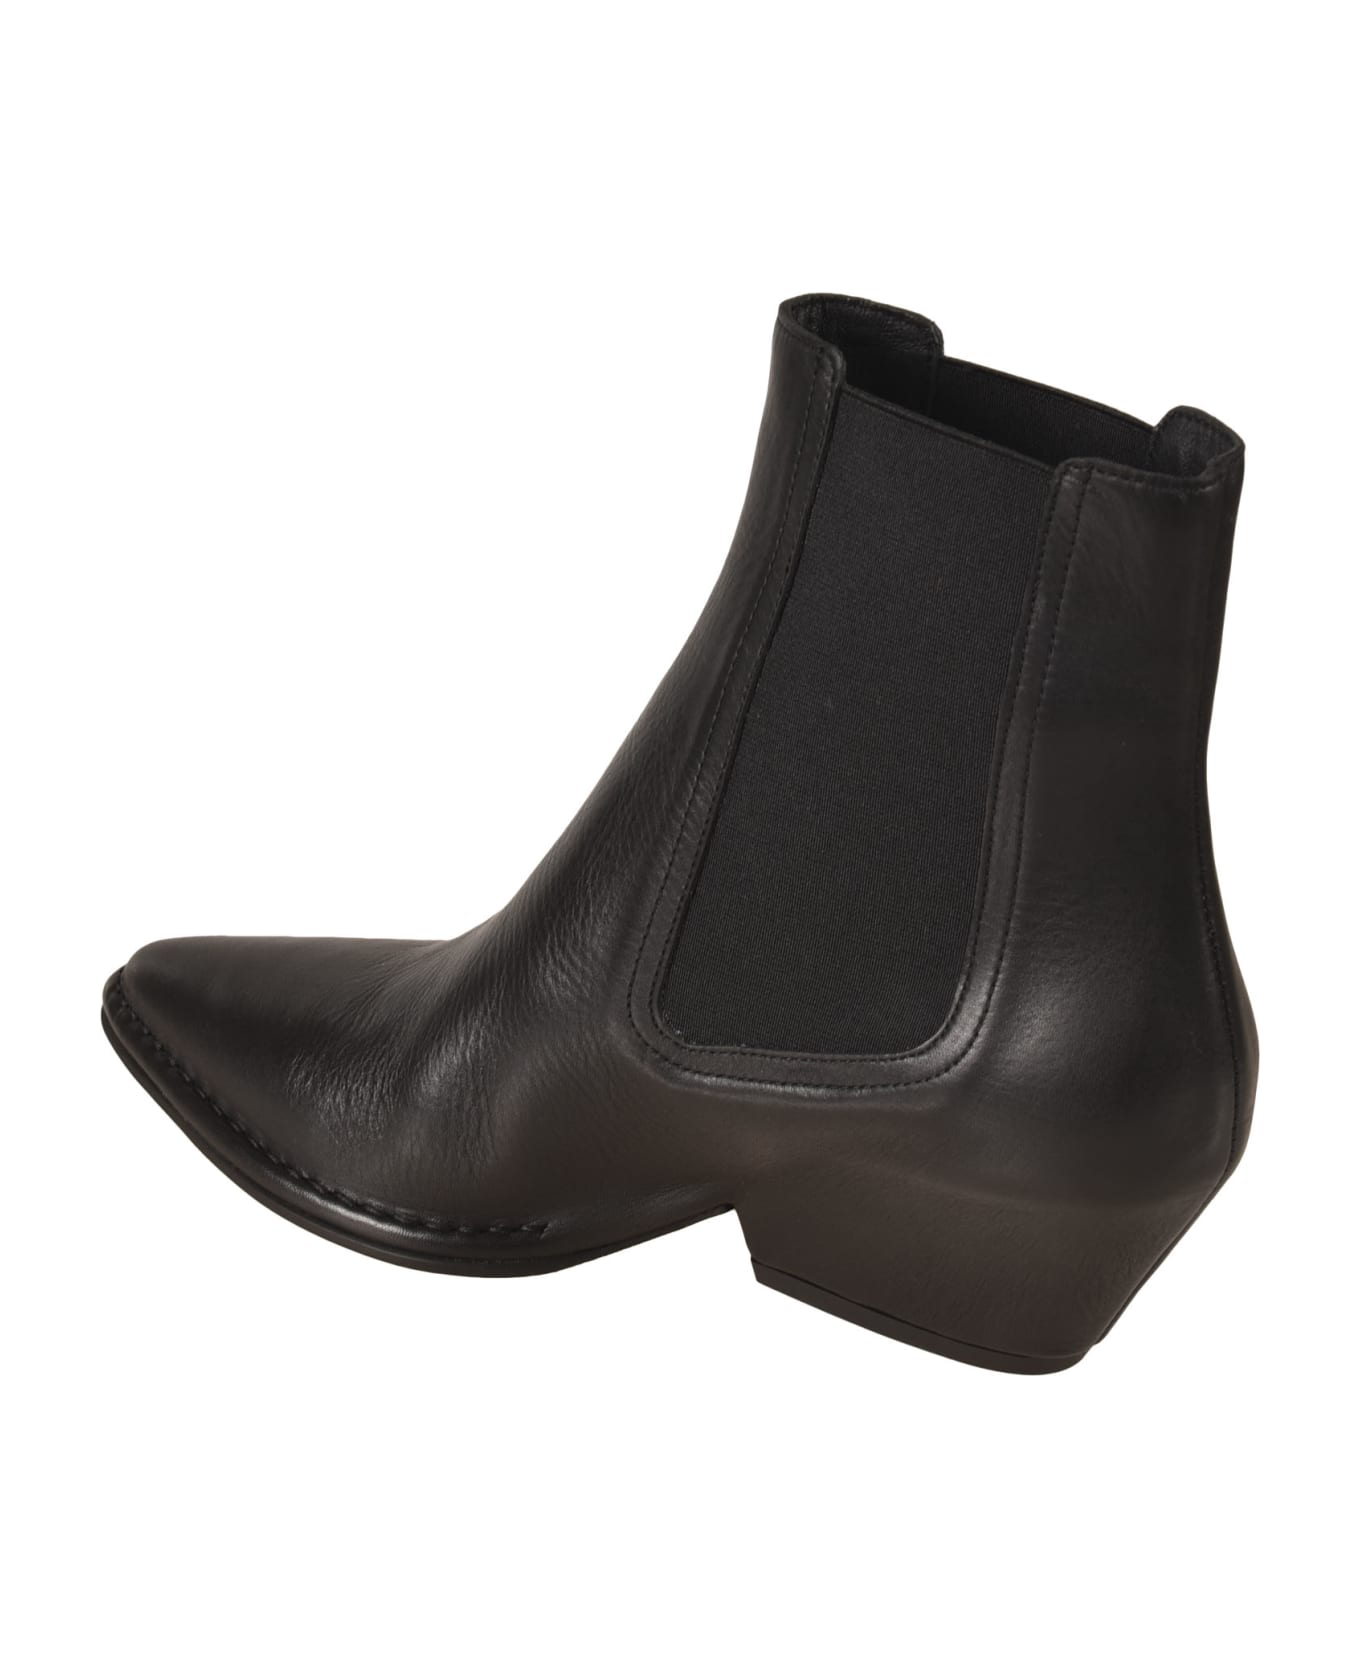 Del Carlo Crio Kobe Ankle Boots - Black ブーツ